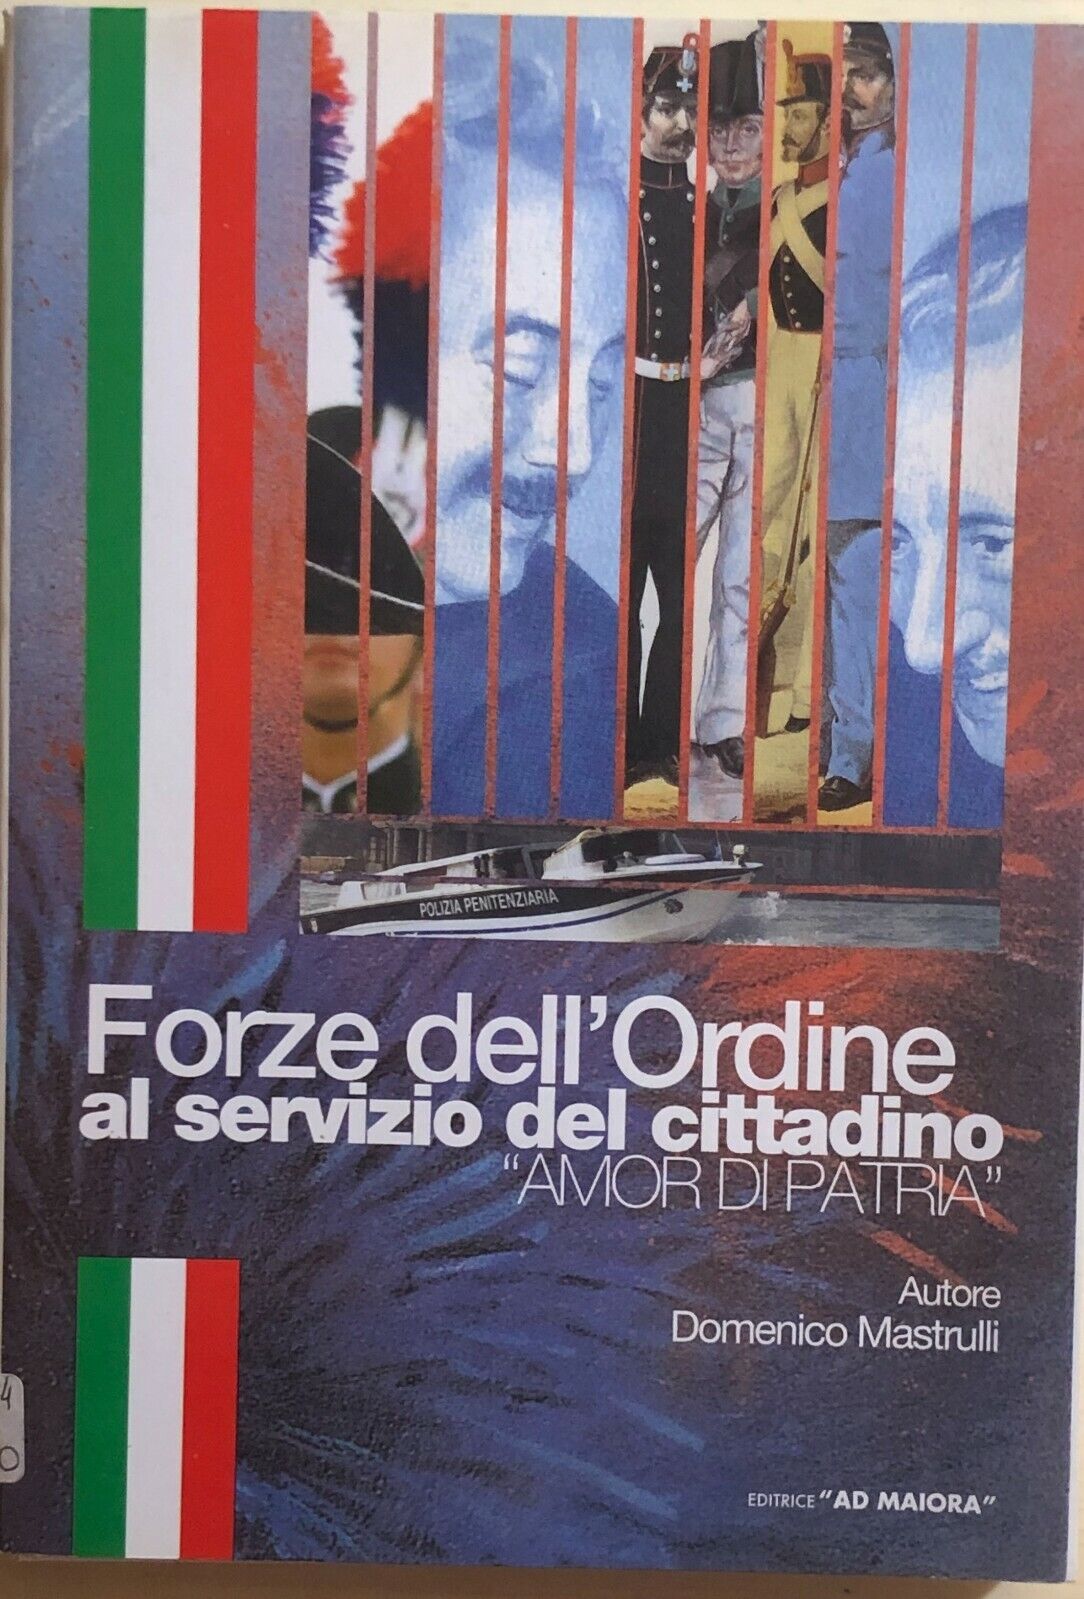 Forze delL'Ordine al servizio del cittadino di Domenico Mastrulli, 2004, Ad Maio